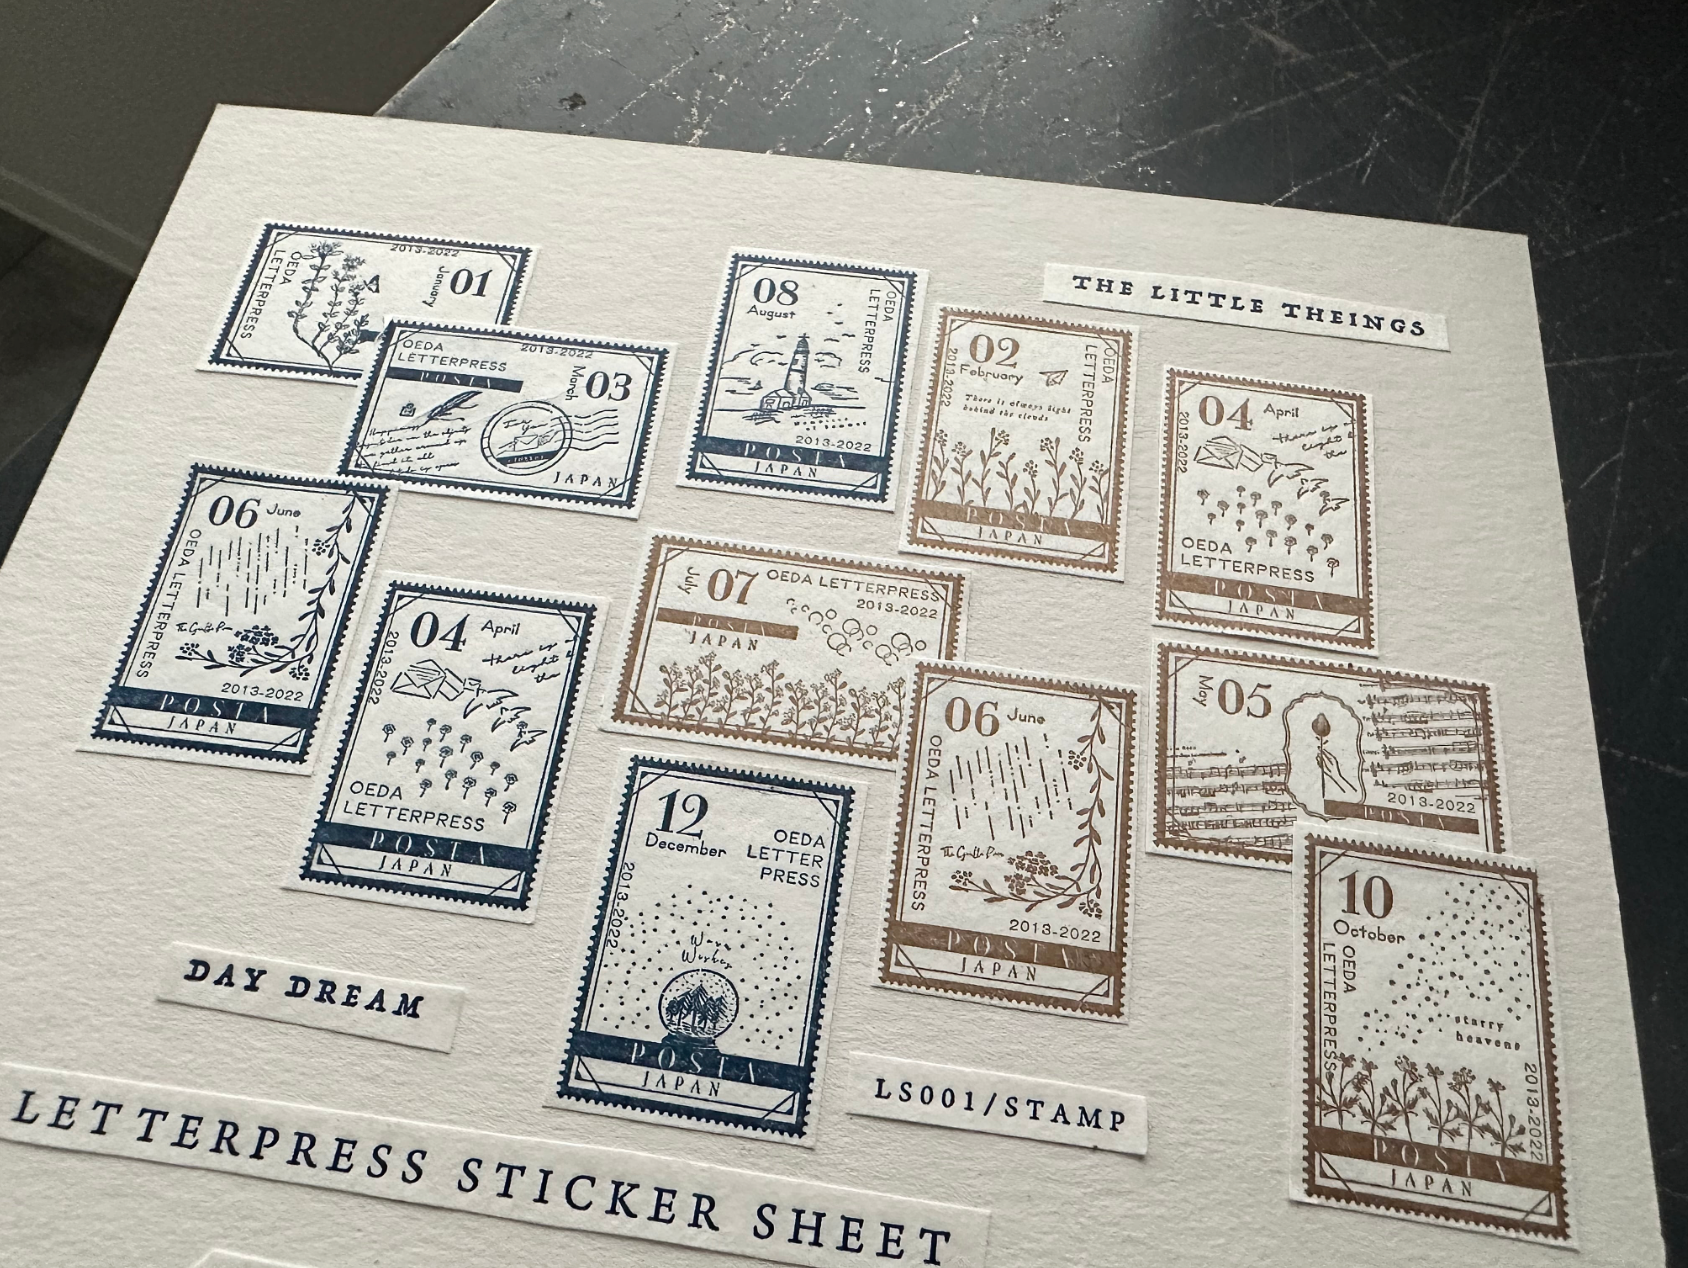 LETTERPRESS sticker sheet【STAMP/Bronze・Darkblue】